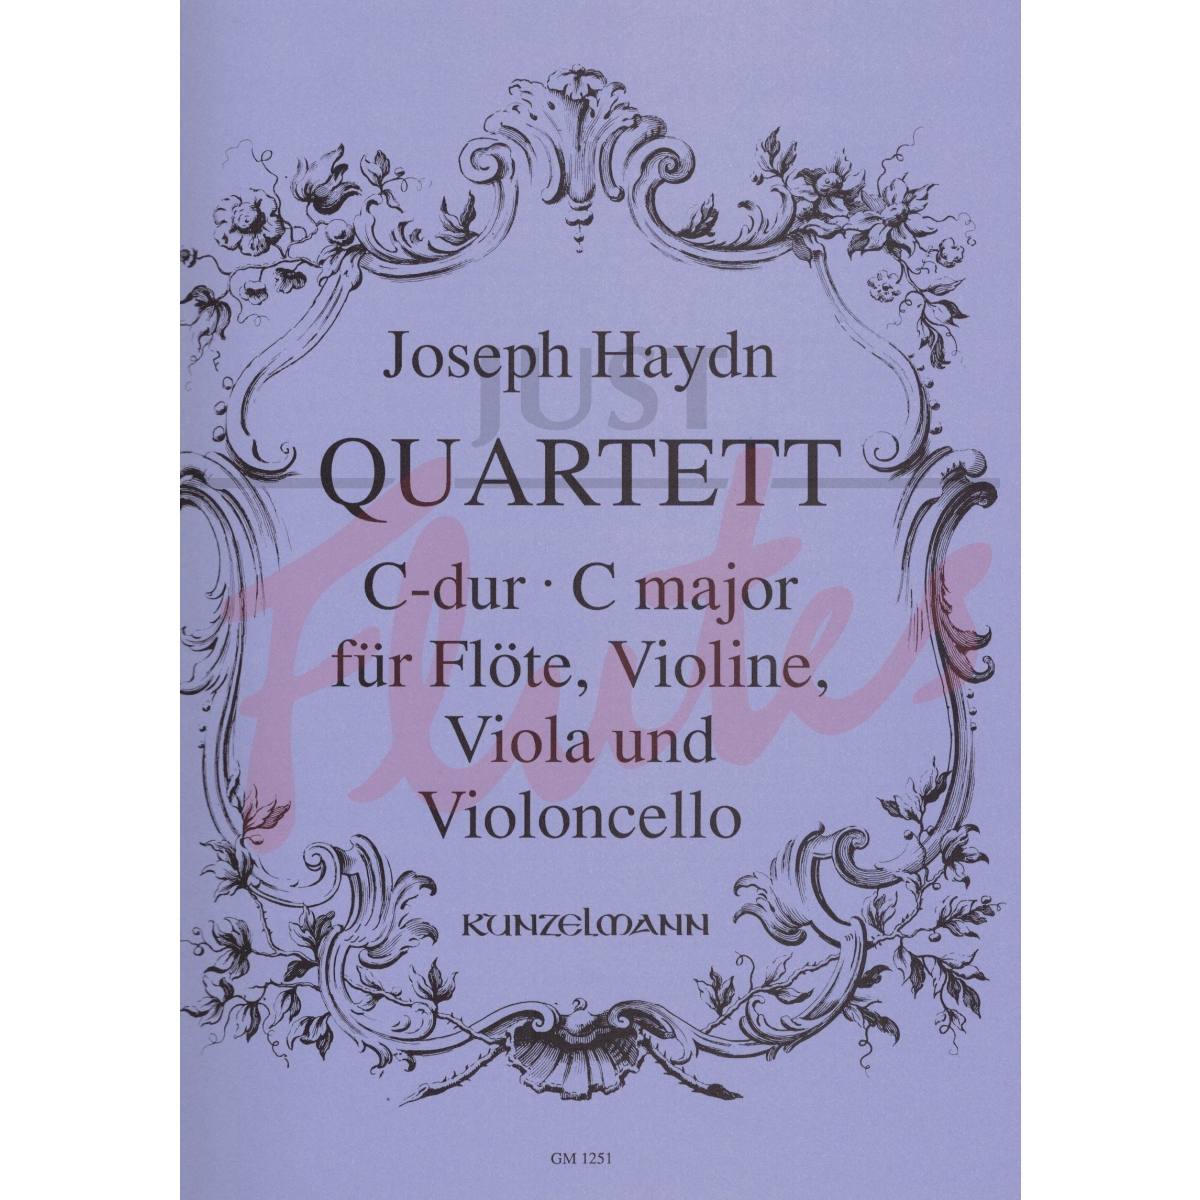 Quartet in C